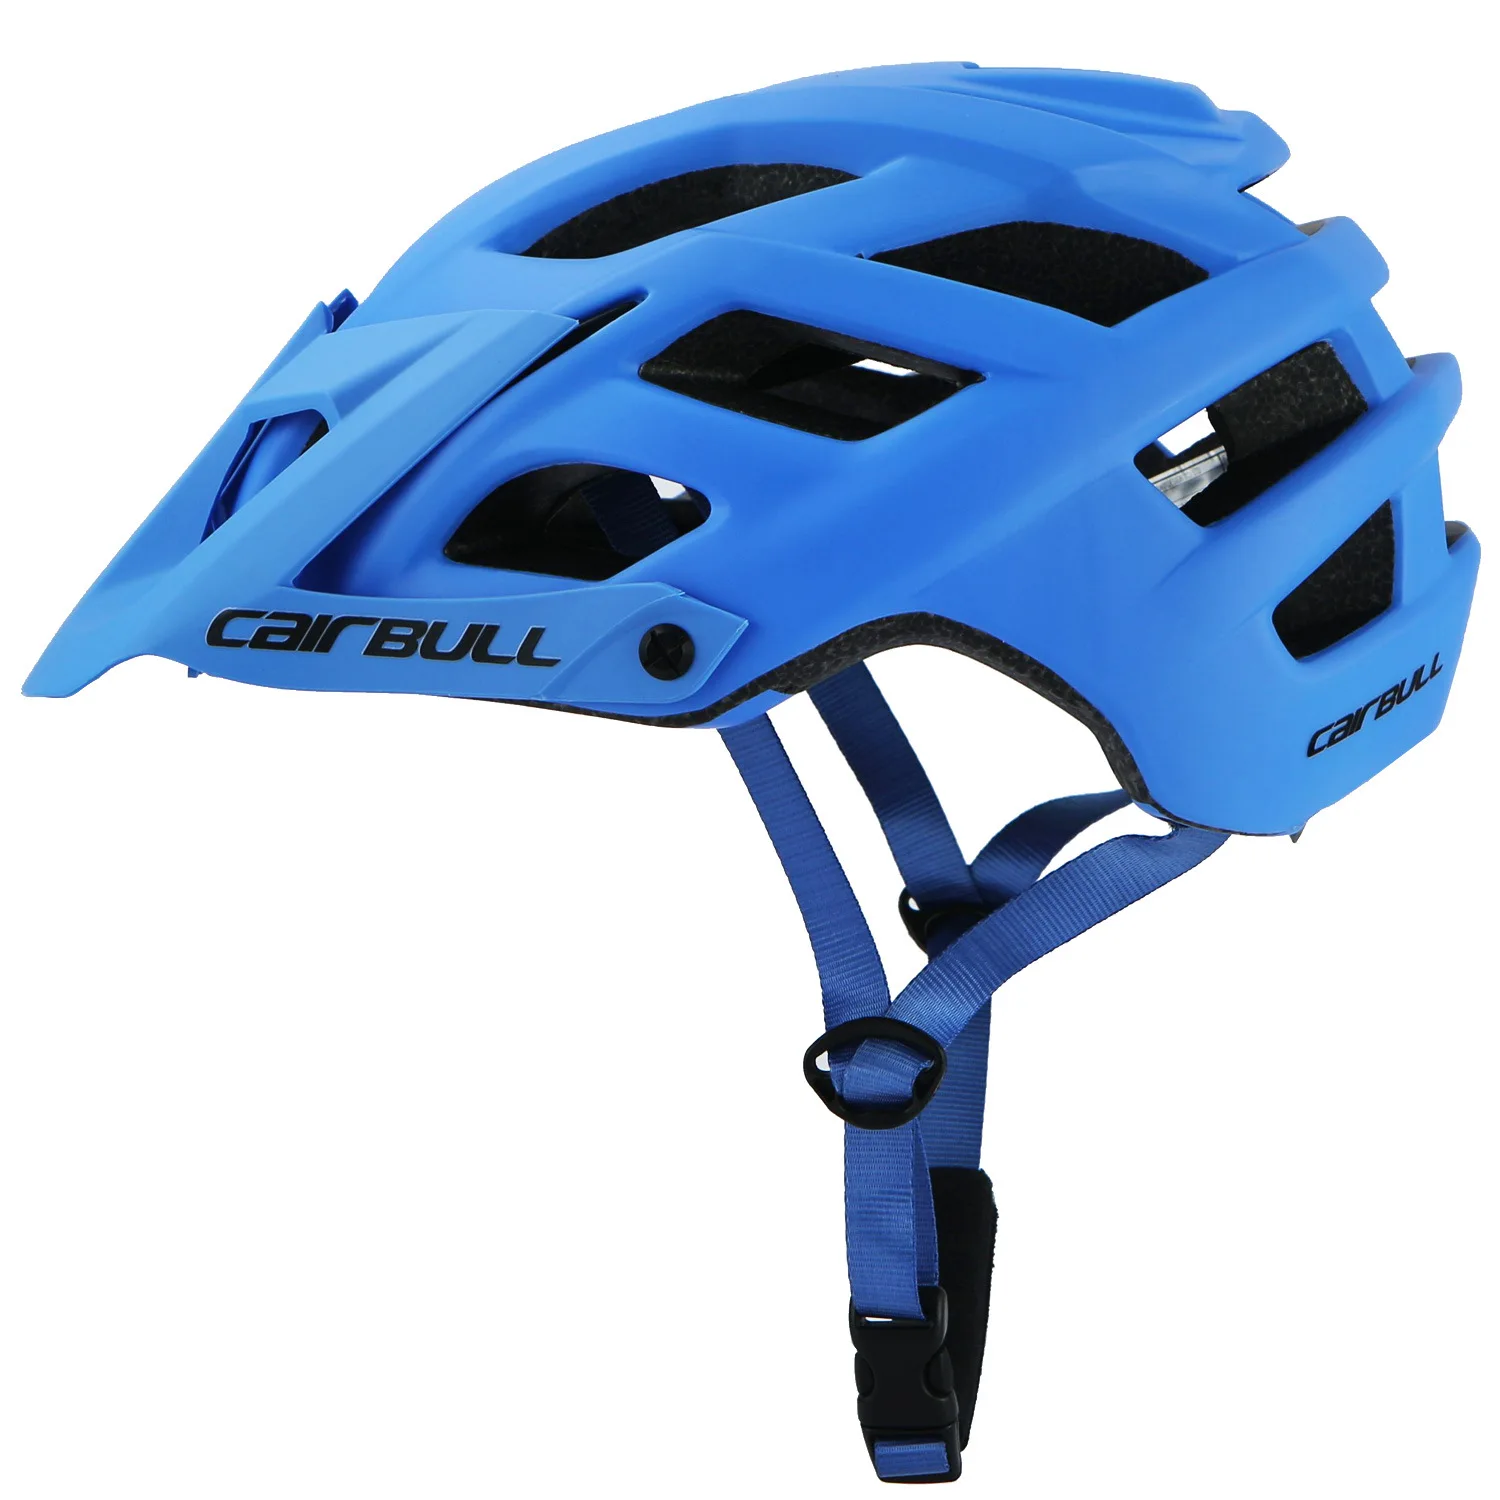 Для занятий спортом на открытом воздухе, безопасность Сверхлегкий шлем для велоспорта для взрослых мужчин и женщин unisexual шлем MTB для верховой езды дорожный велосипед Экстремальные виды спорта - Цвет: Blue